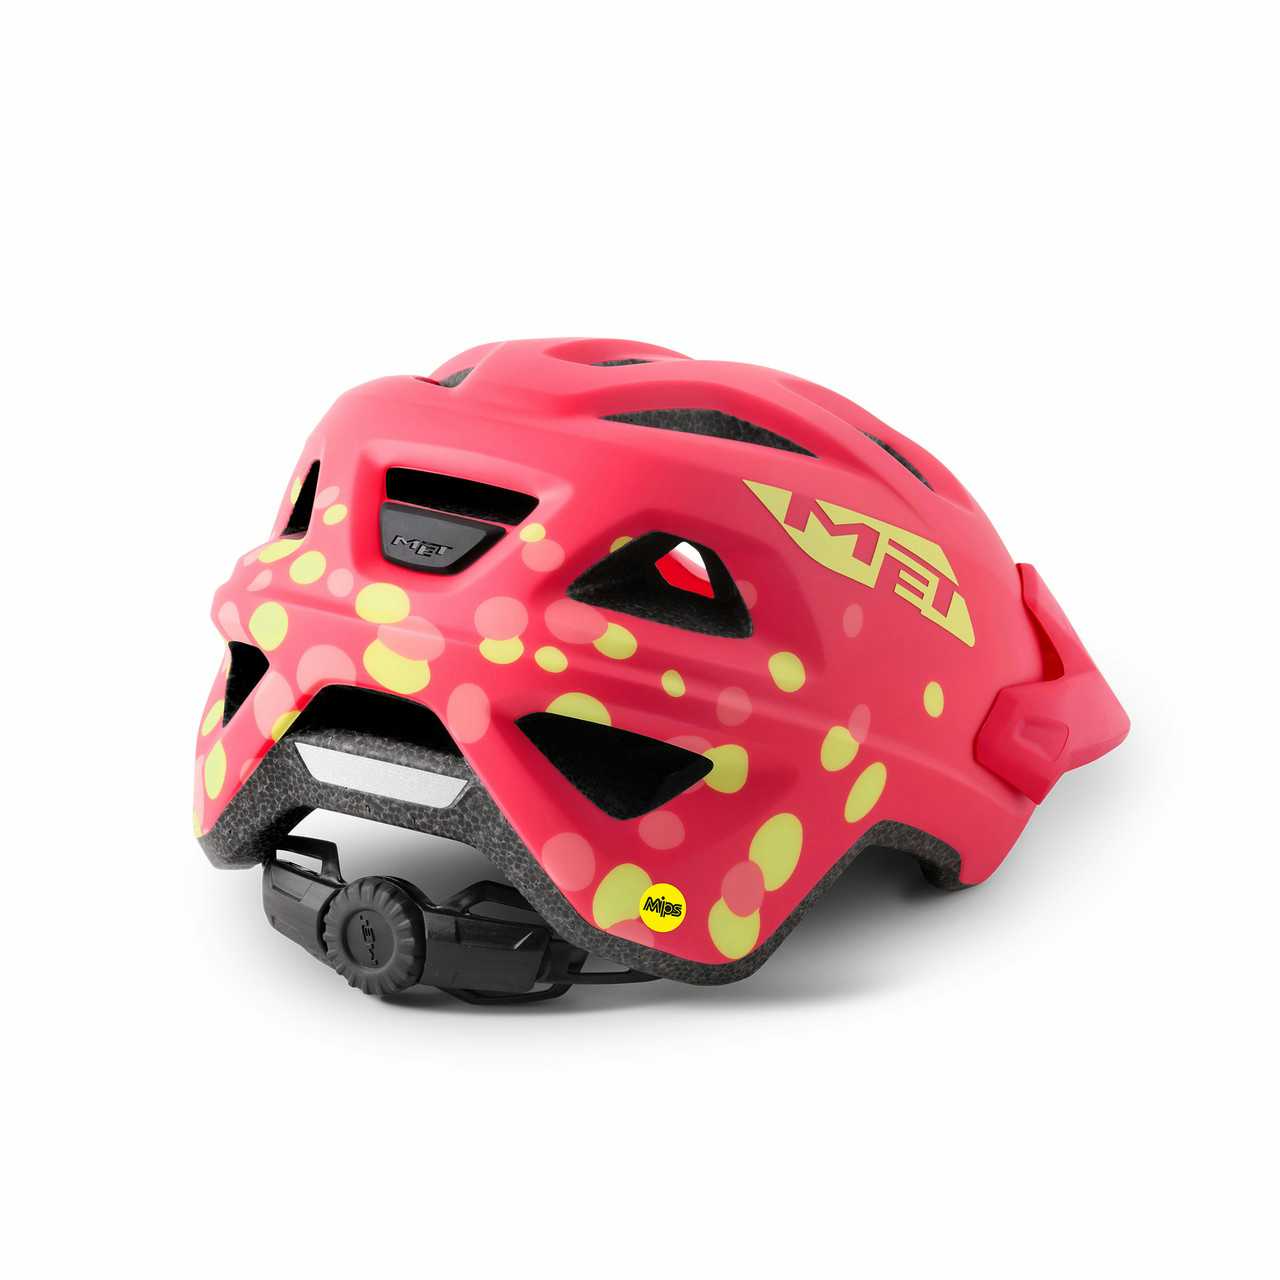 Eldar MIPS Helmet Coral Pink Polka Dots